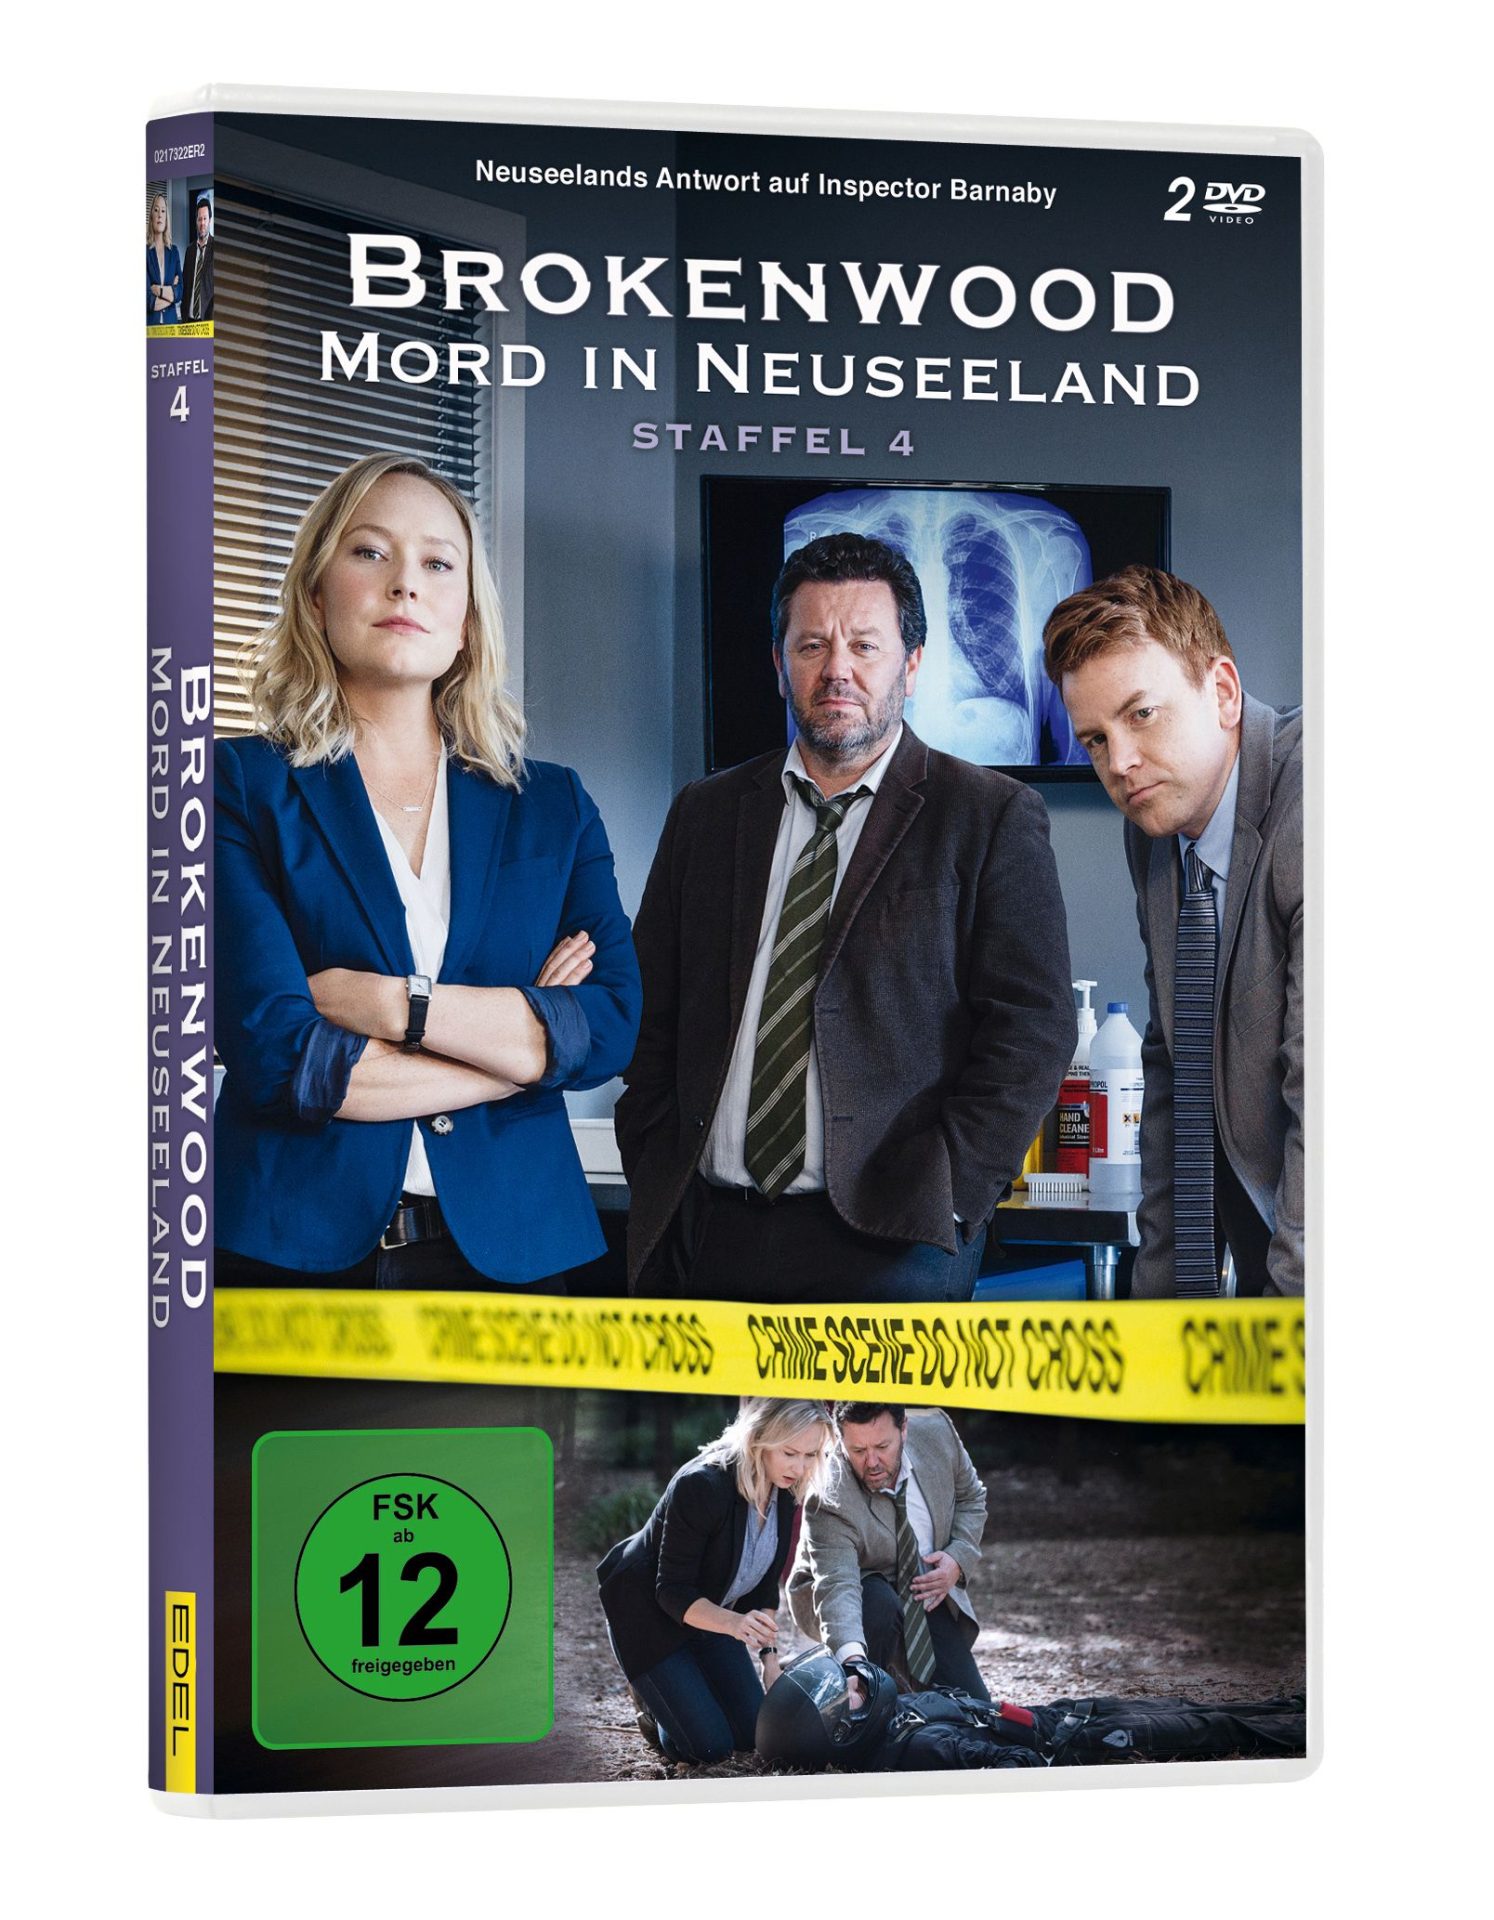 Staffel 4 der liebenswerten ARD-Krimiserie Brokenwood – Mord in Neuseeland 